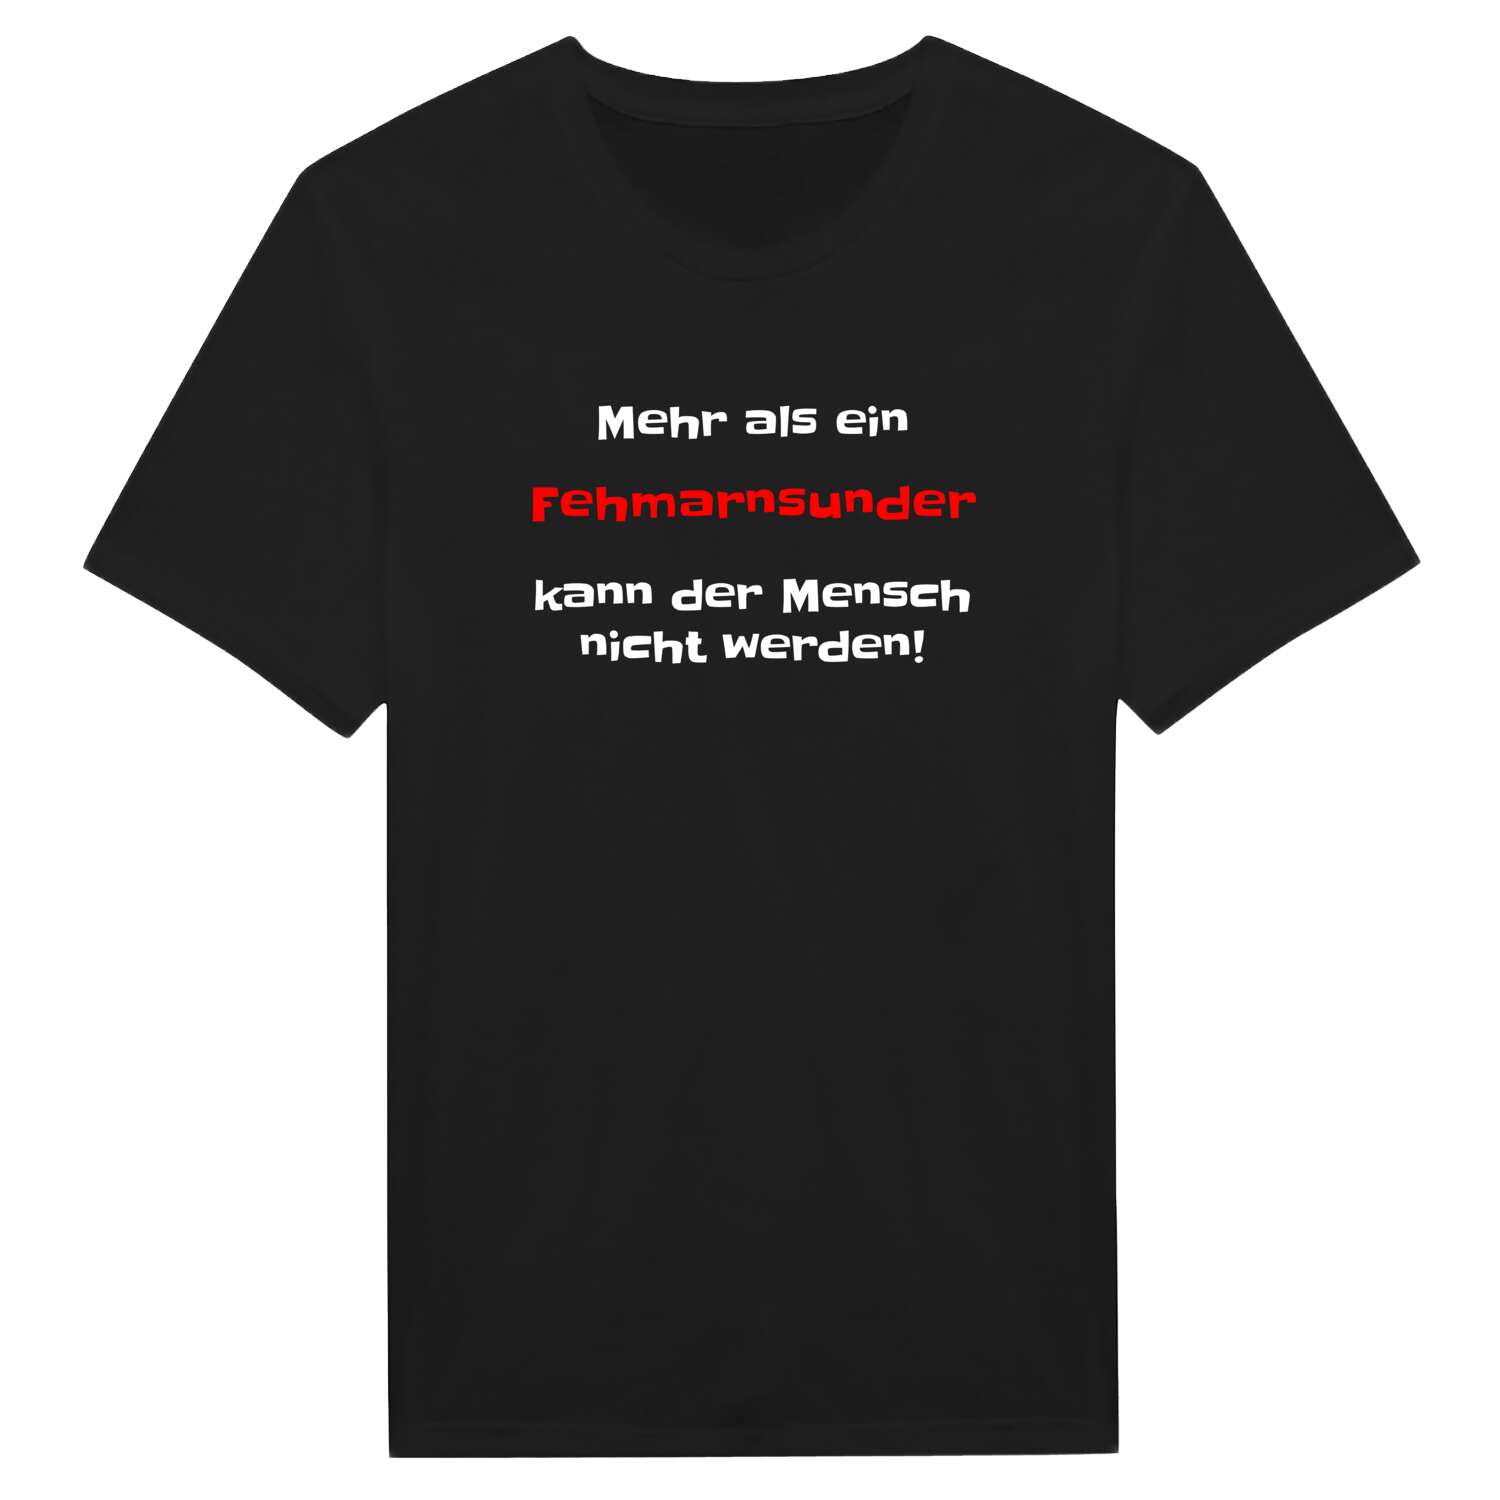 Fehmarnsund T-Shirt »Mehr als ein«